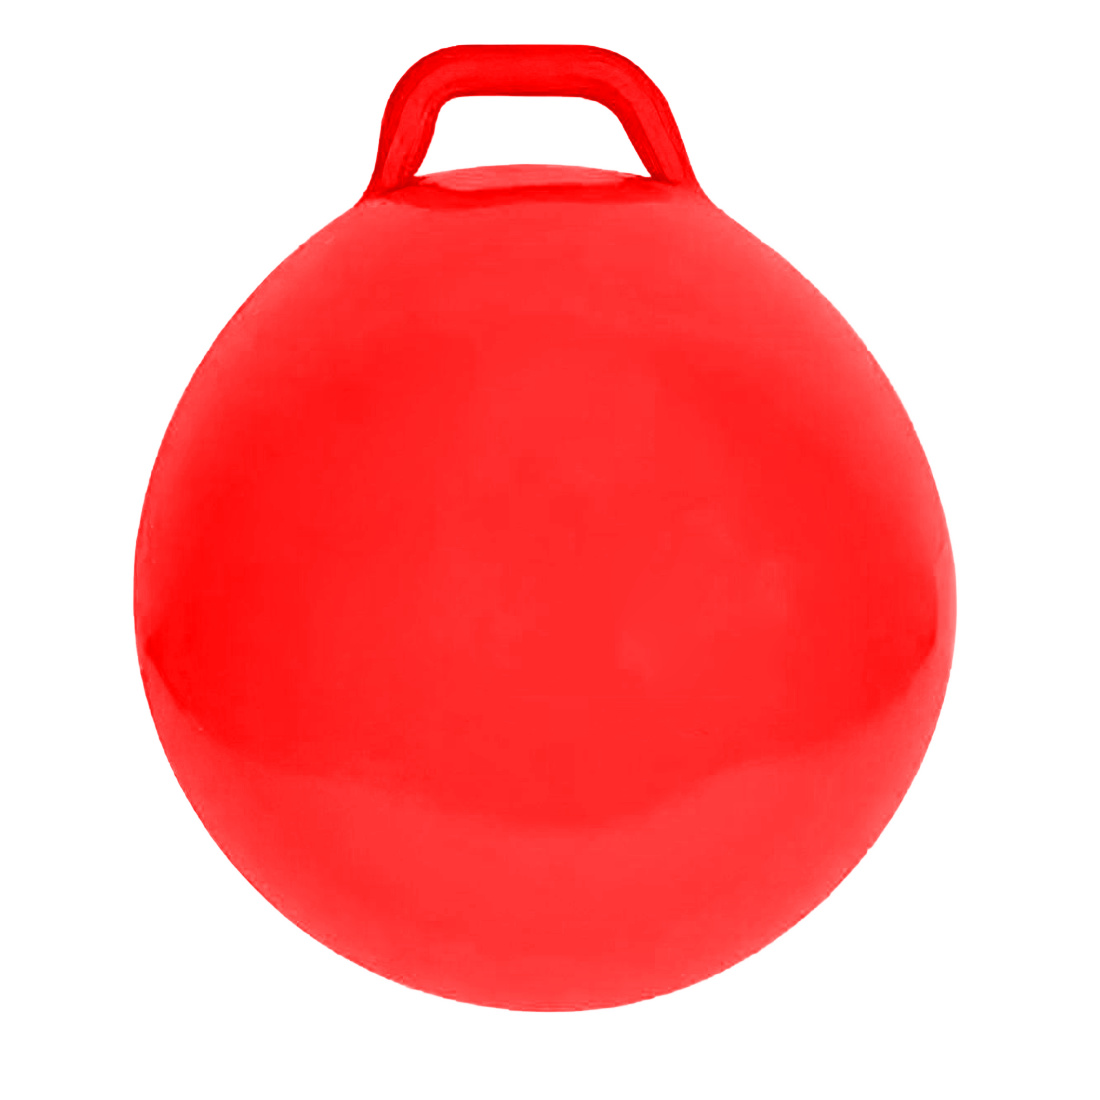 Hüpfball 60 cm 1x Ball